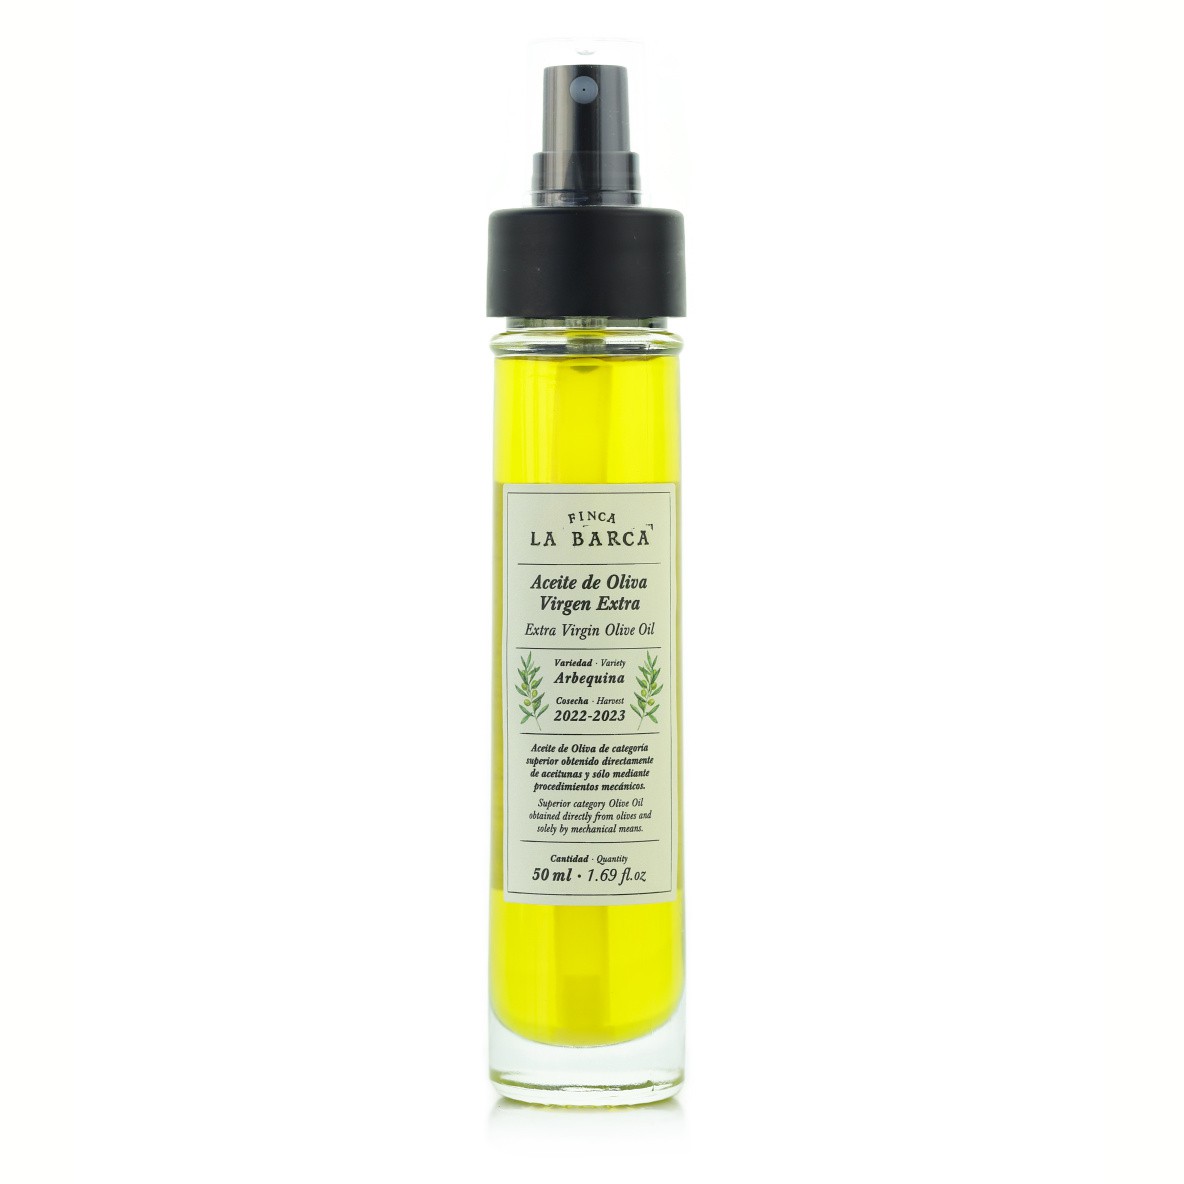 Extra Virgin Olive Oil Spray Bottle 50 ml.